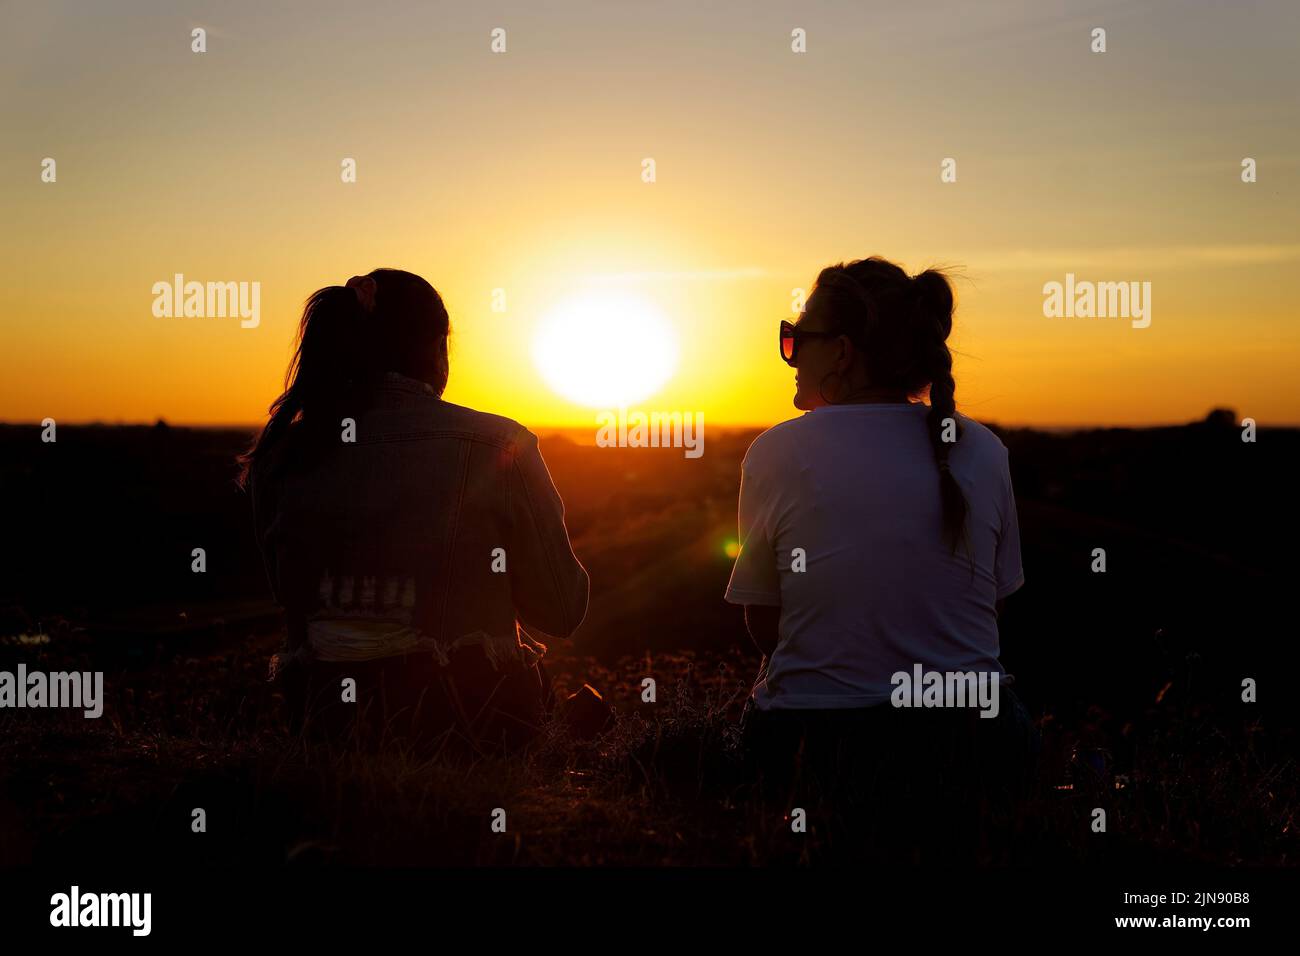 Dos mujeres ven la puesta de sol desde una colina en Ealing, al oeste de Londres, mientras un verano de prohibiciones de los tubos de escape y advertencias de incendios continúan, con una alerta de salud por calor que se está implantando en gran parte del país. Fecha de la foto: Martes 9 de agosto de 2022. Foto de stock